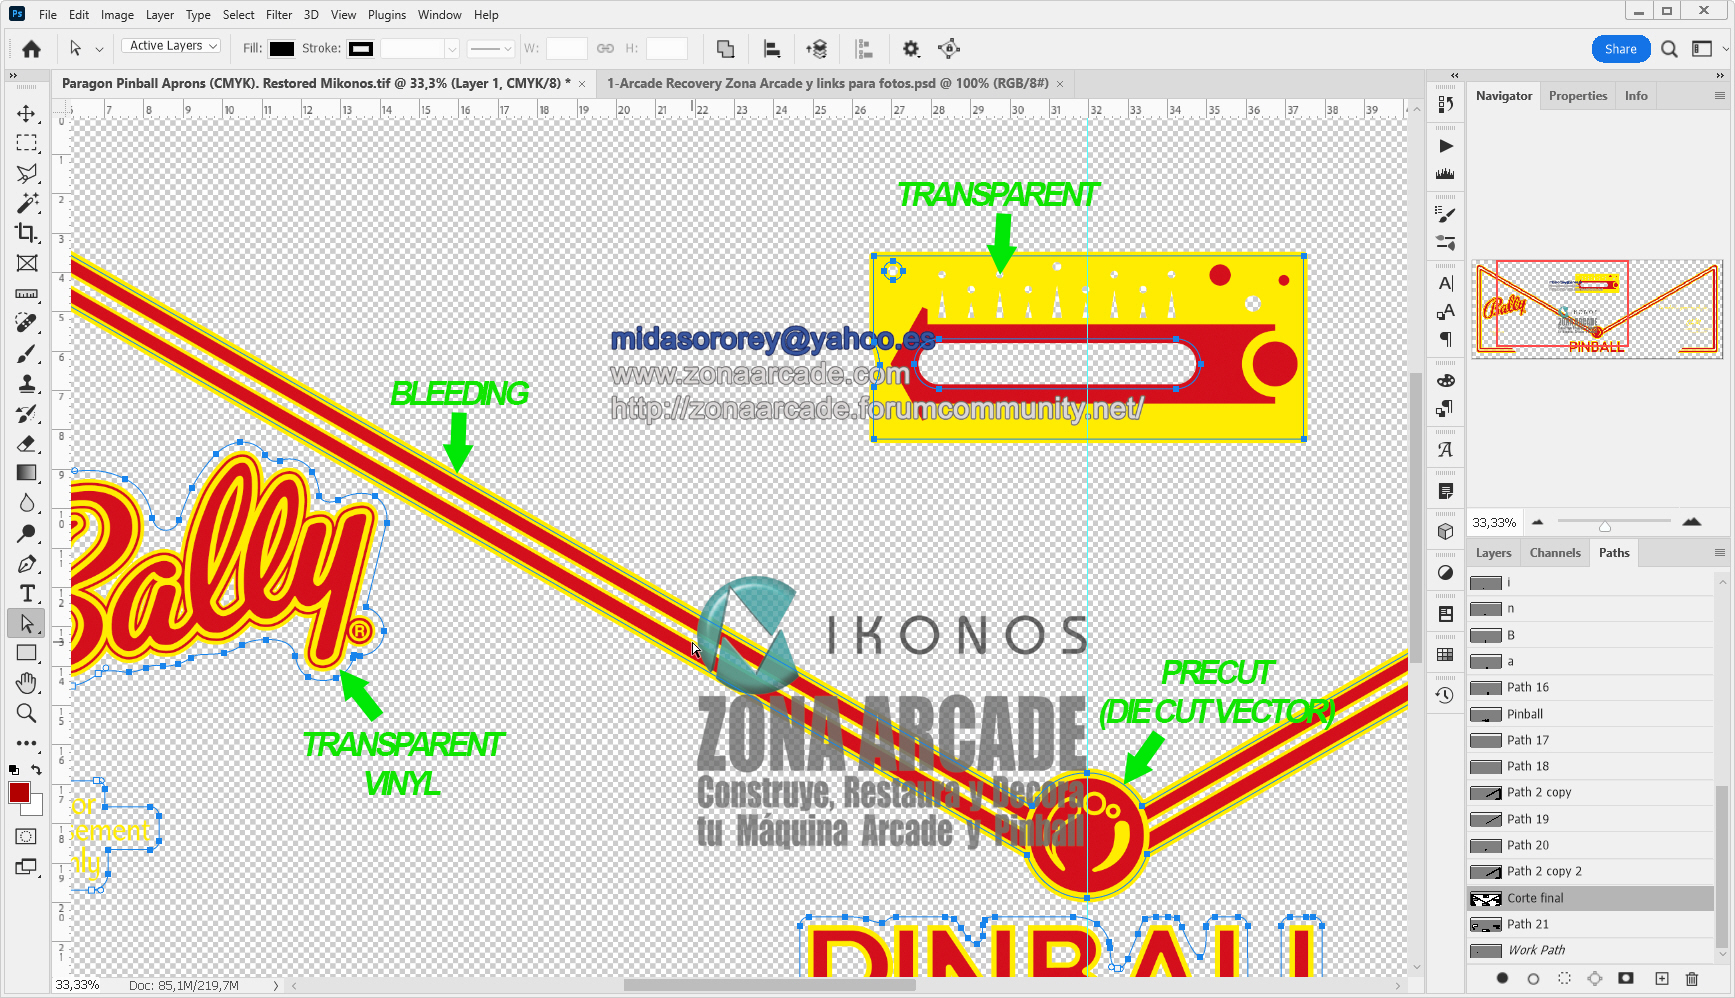 Paragon-Main-Pinball-Aprons-Print-Design-Mikonos2